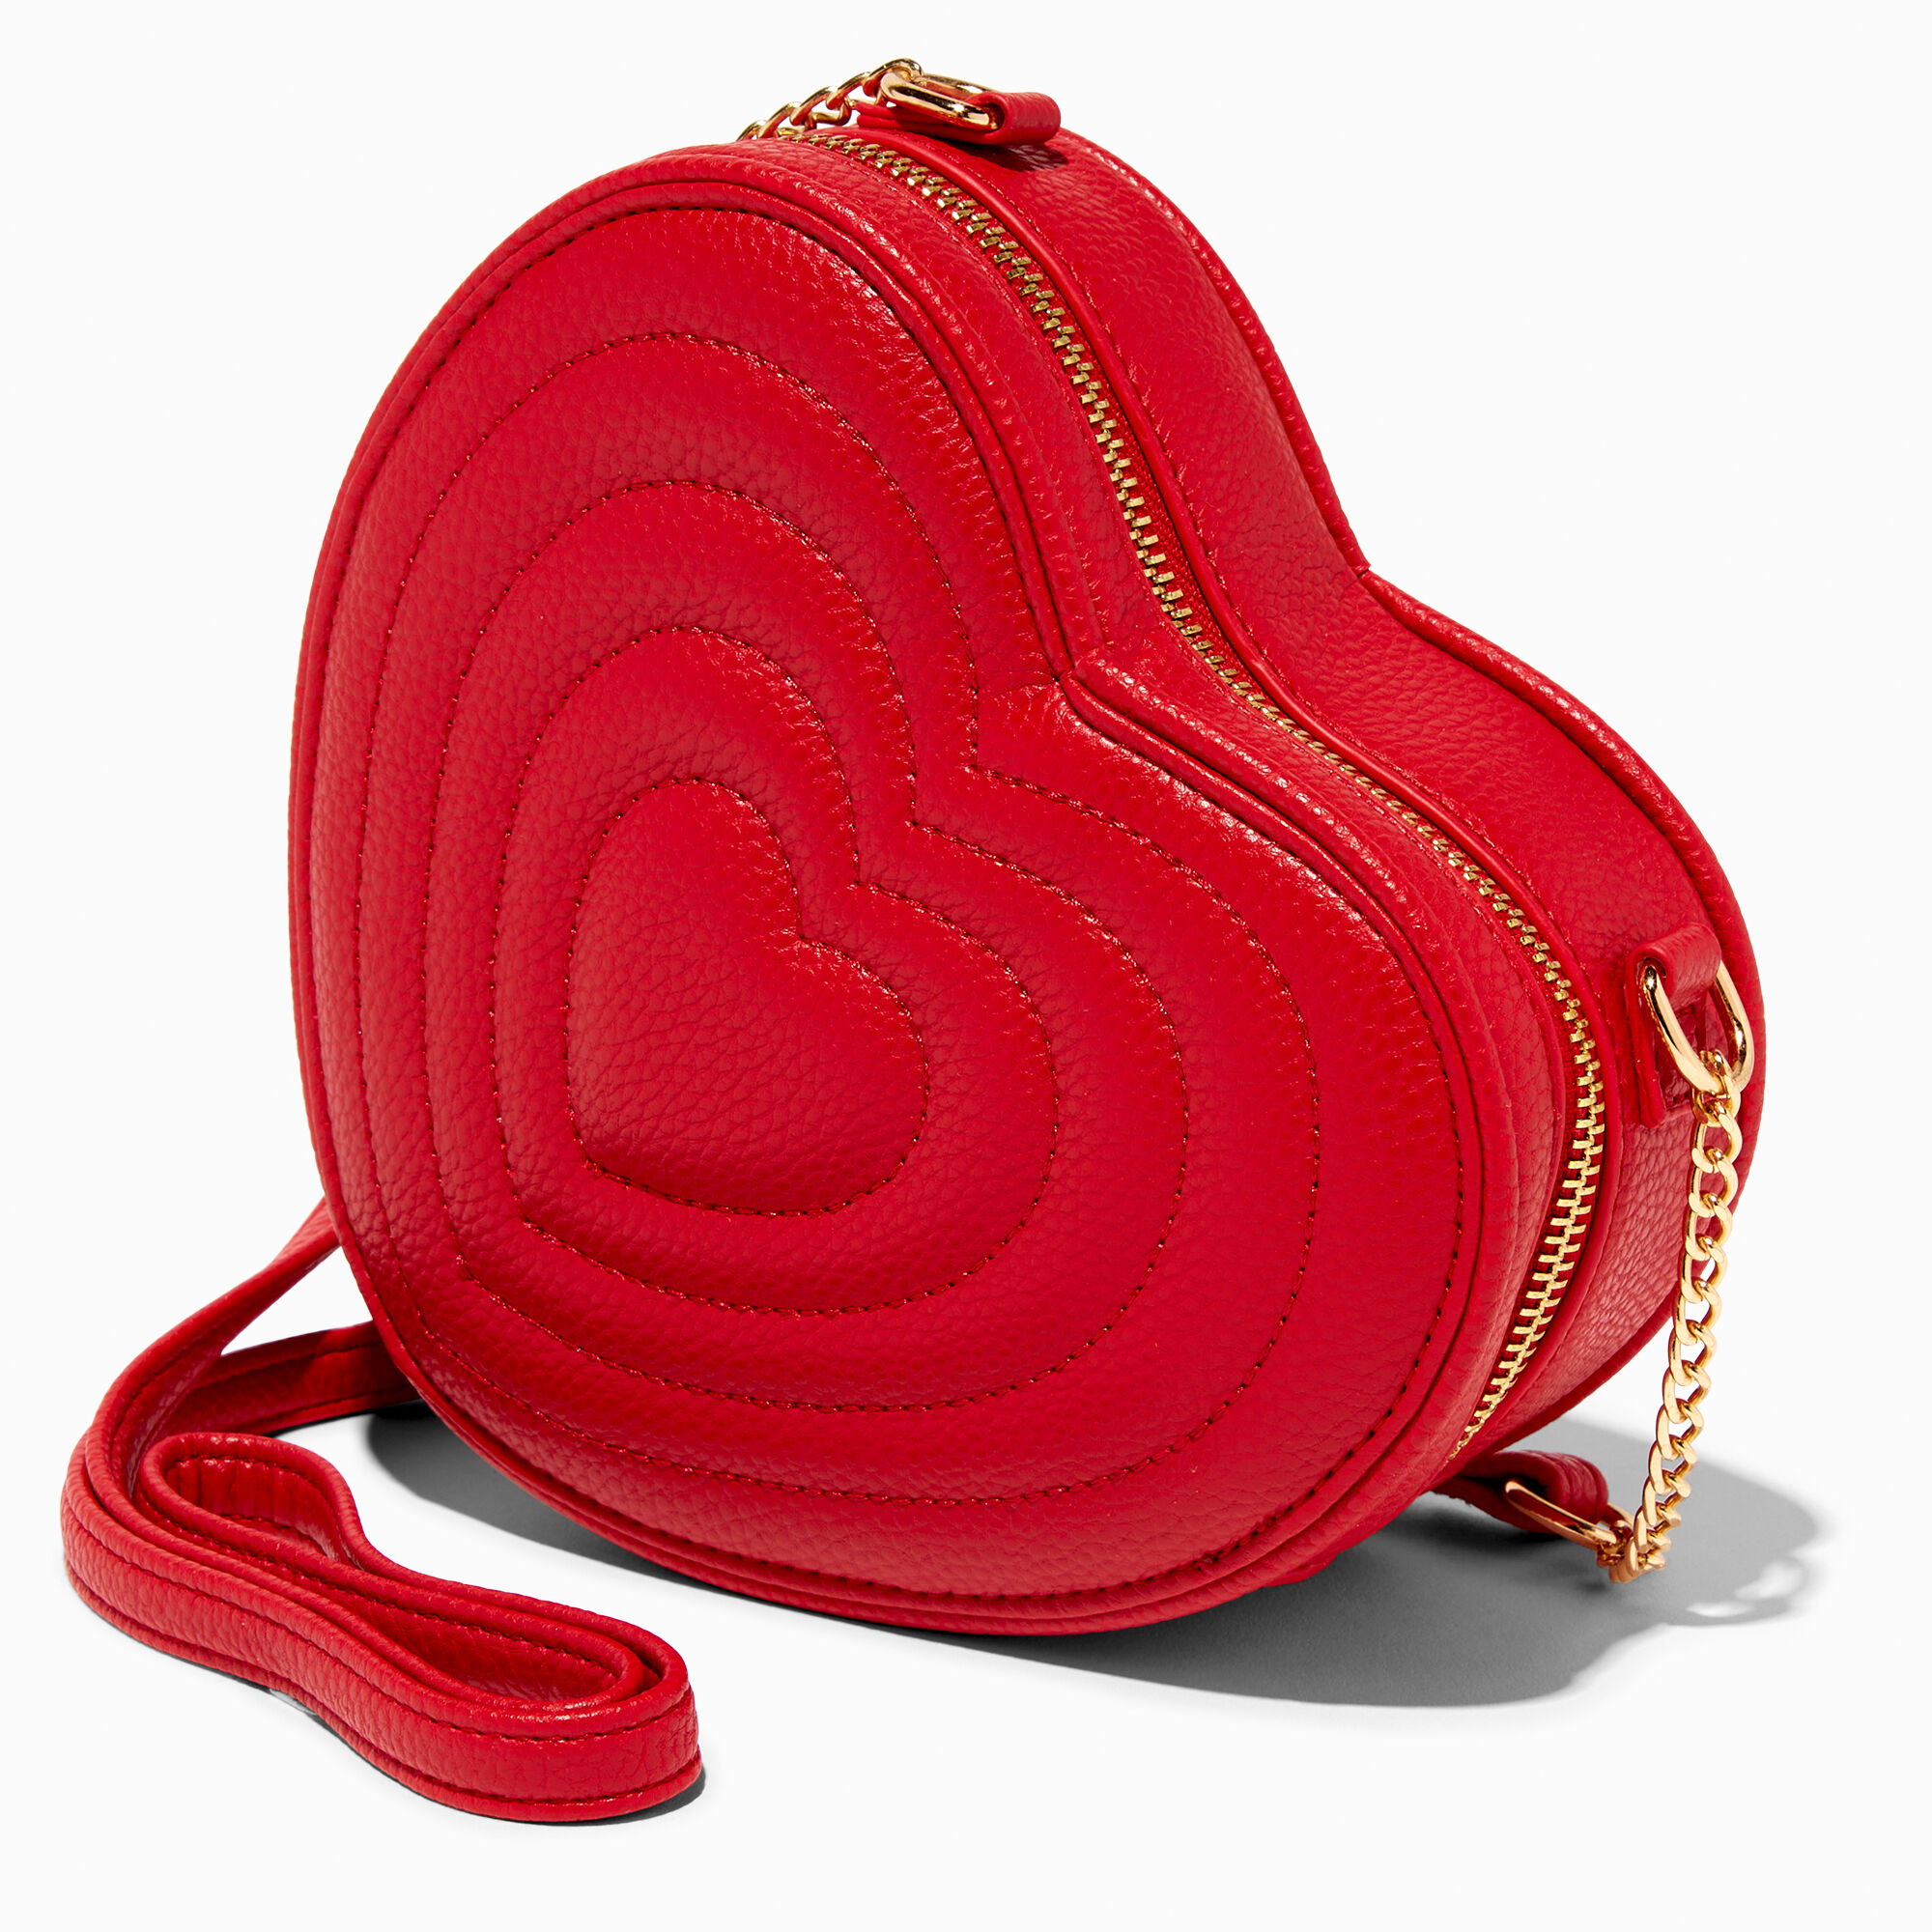 MICHAEL KORS Heart-shaped handbag